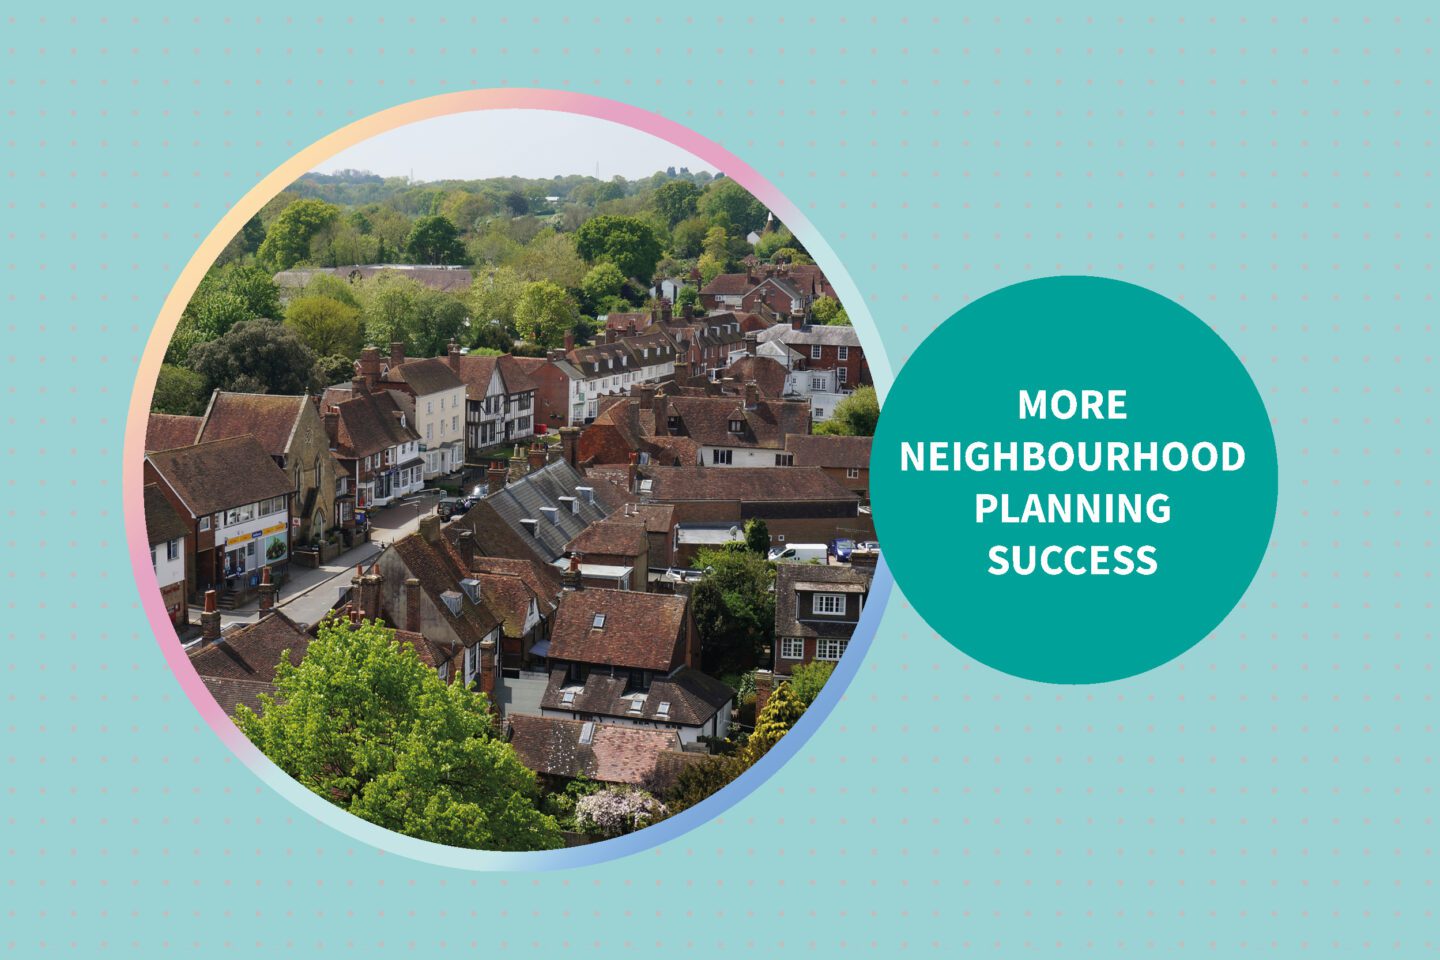 More Neighbourhood Planning Success